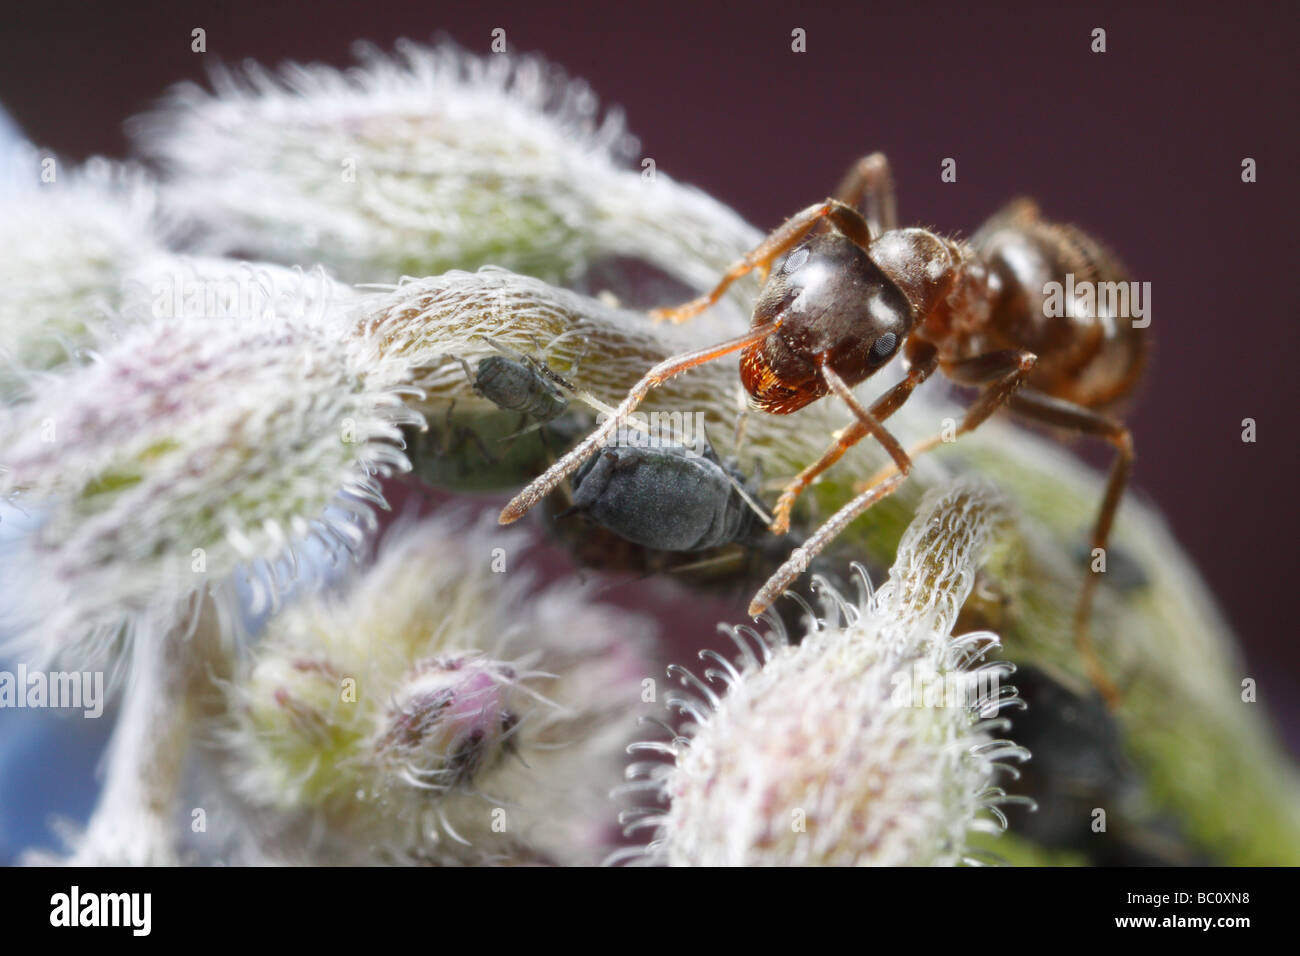 Lasius niger, la hormiga negra de jardín, y los áfidos (Aphis fabae). La flor es una borraja flor o estrella. Foto de stock